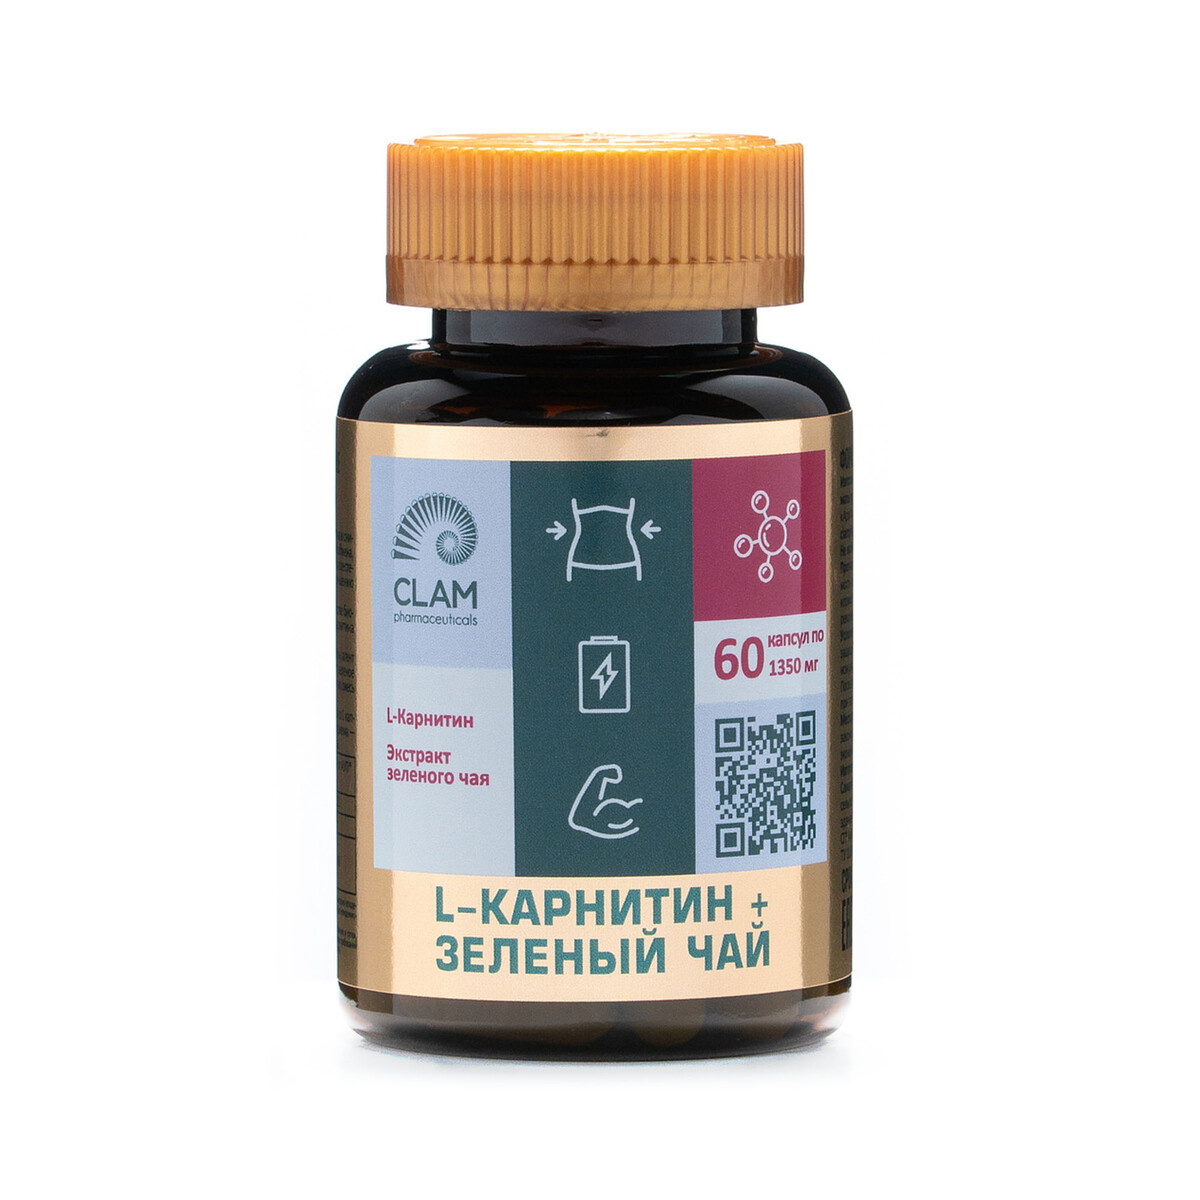 фото L-карнитин + зеленый чай - нормализация веса - для похудения и повышения энергии - 60 капсул clampharm